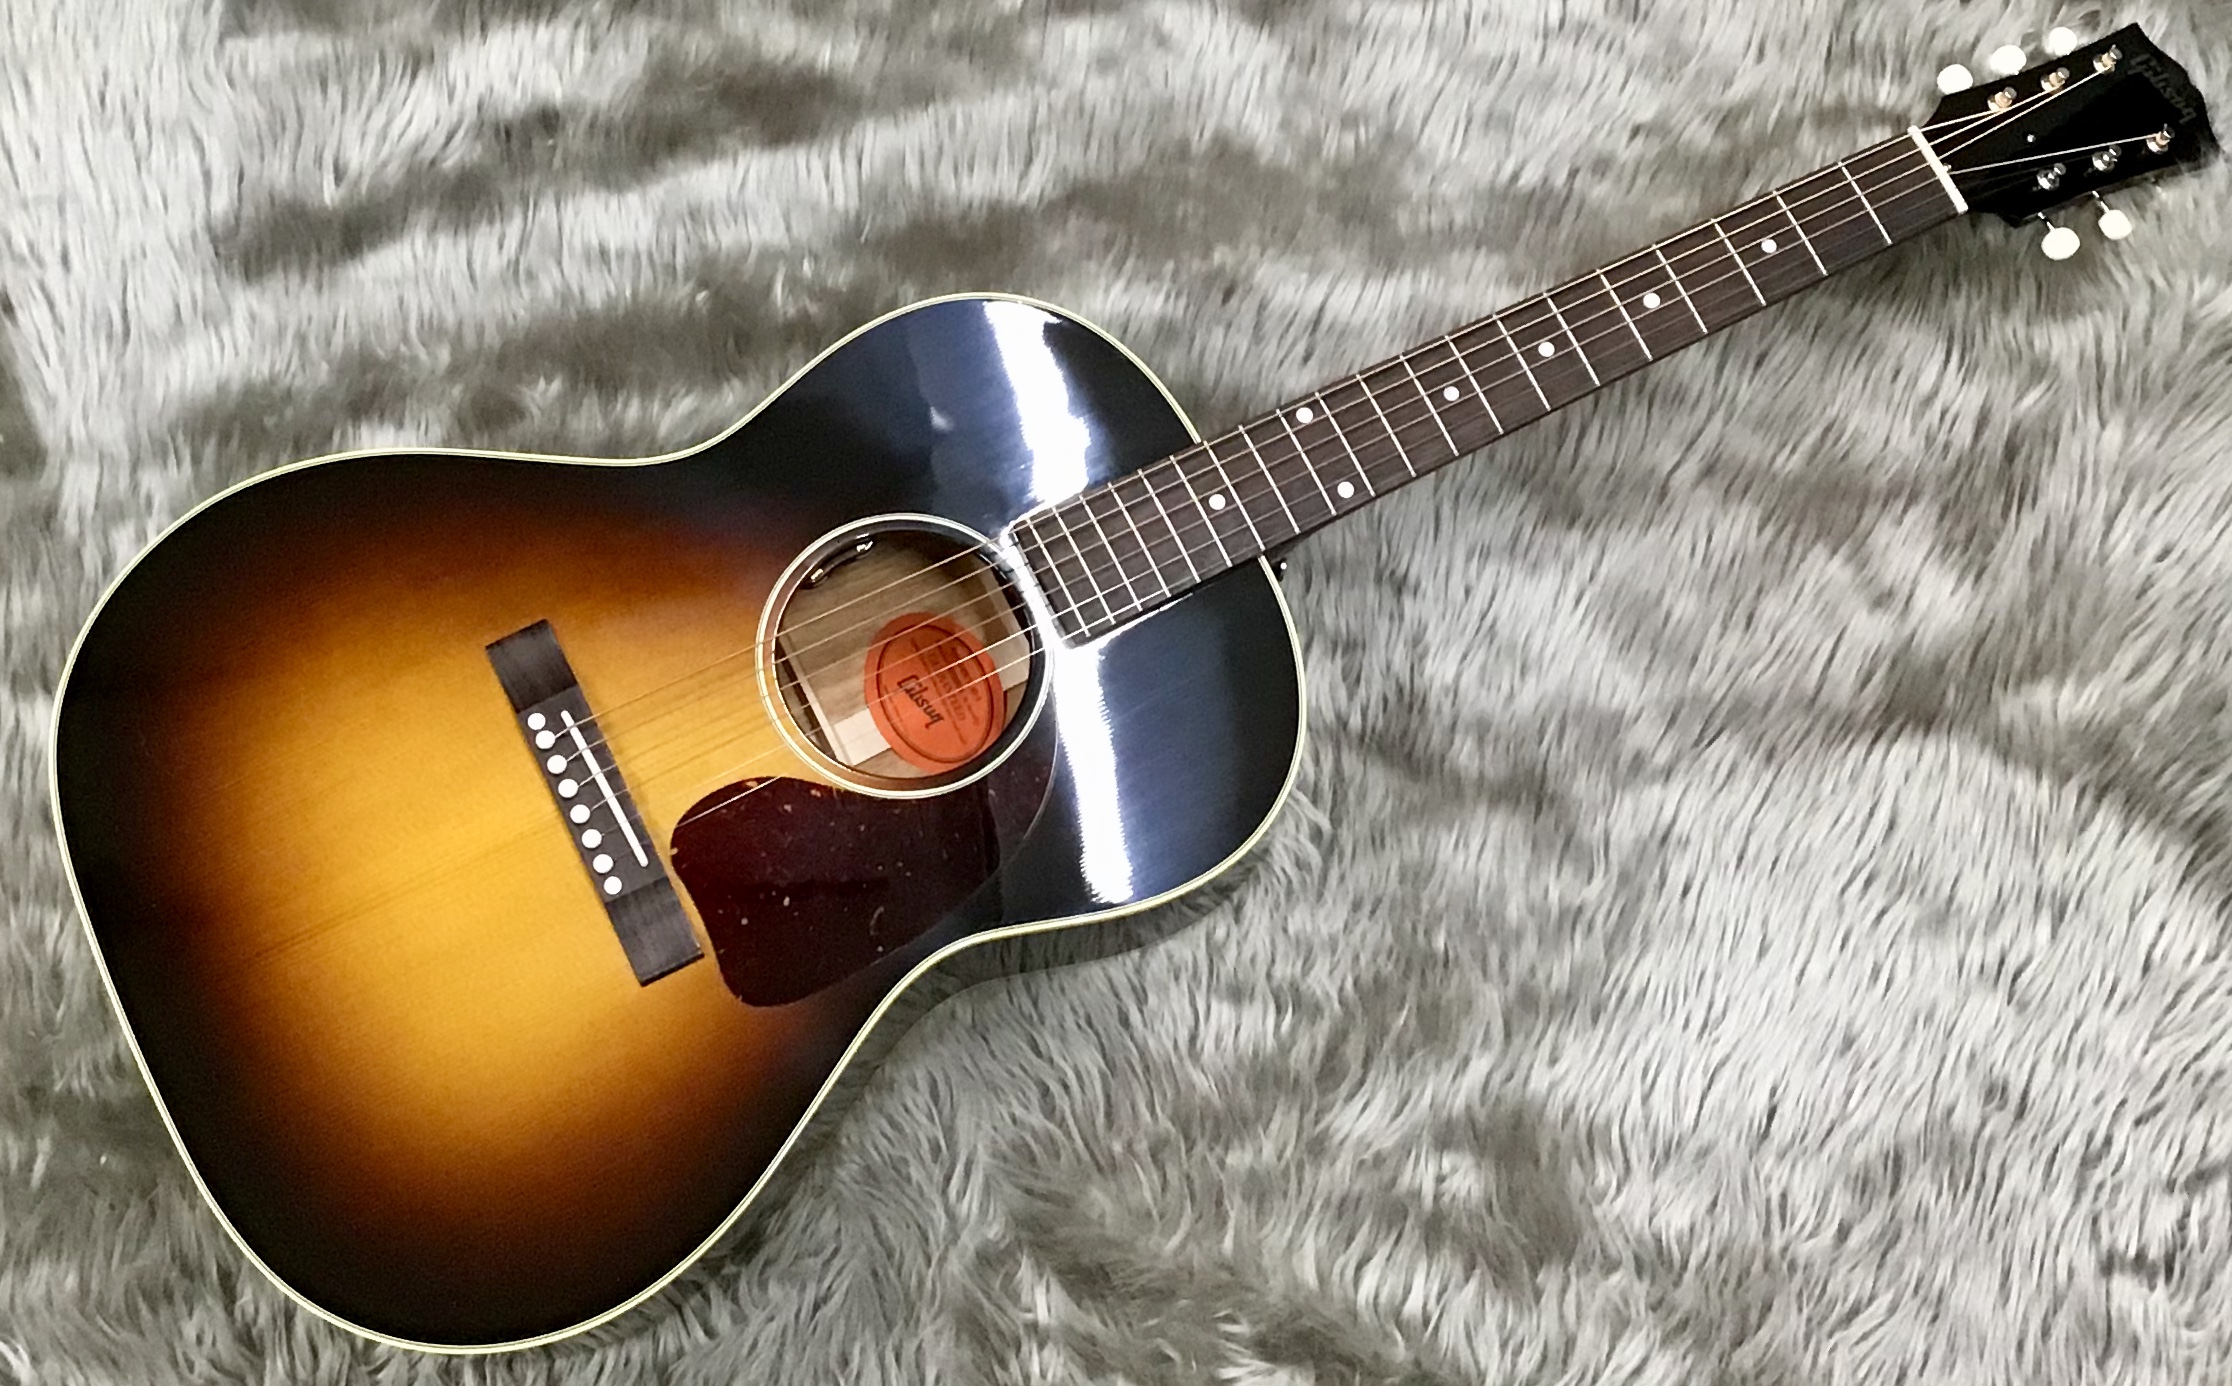 【アコースティックギター】Gibson 50s LG-2 - イオンモール直方店 店舗情報-島村楽器